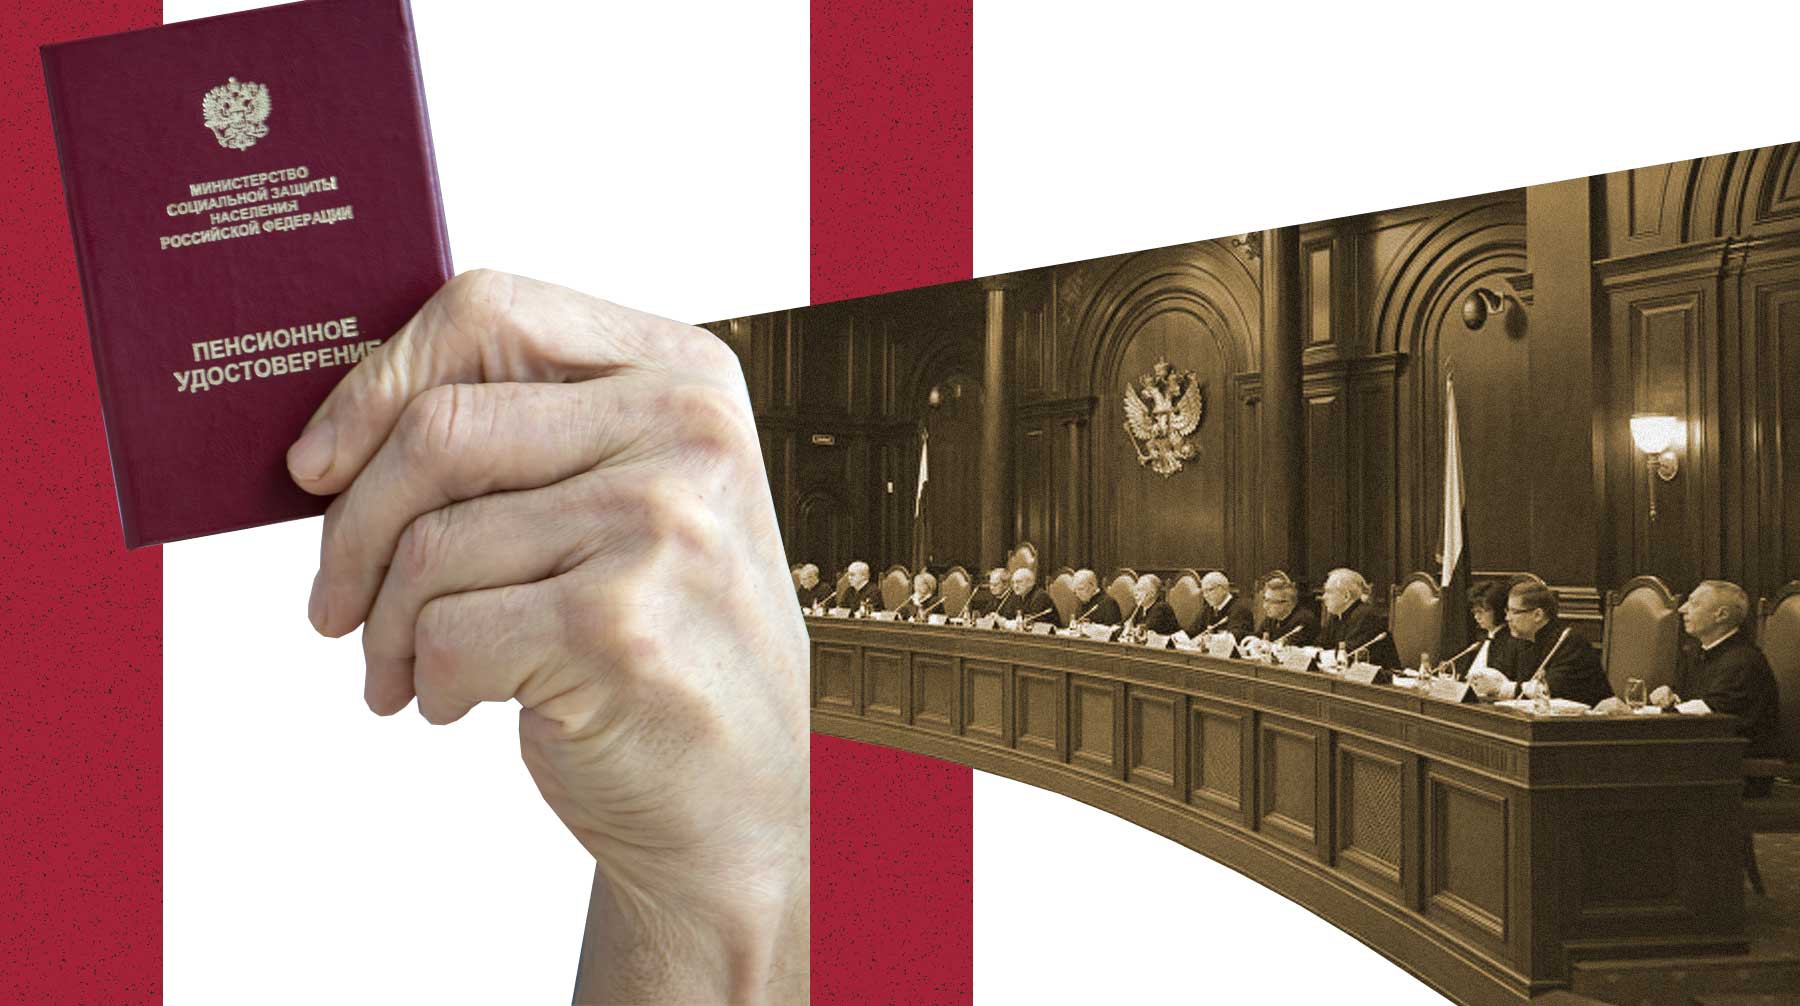 Dailystorm - Юристы о Конституционном суде и пенсионной реформе: Они сами себе подпилили сук, на котором сидят